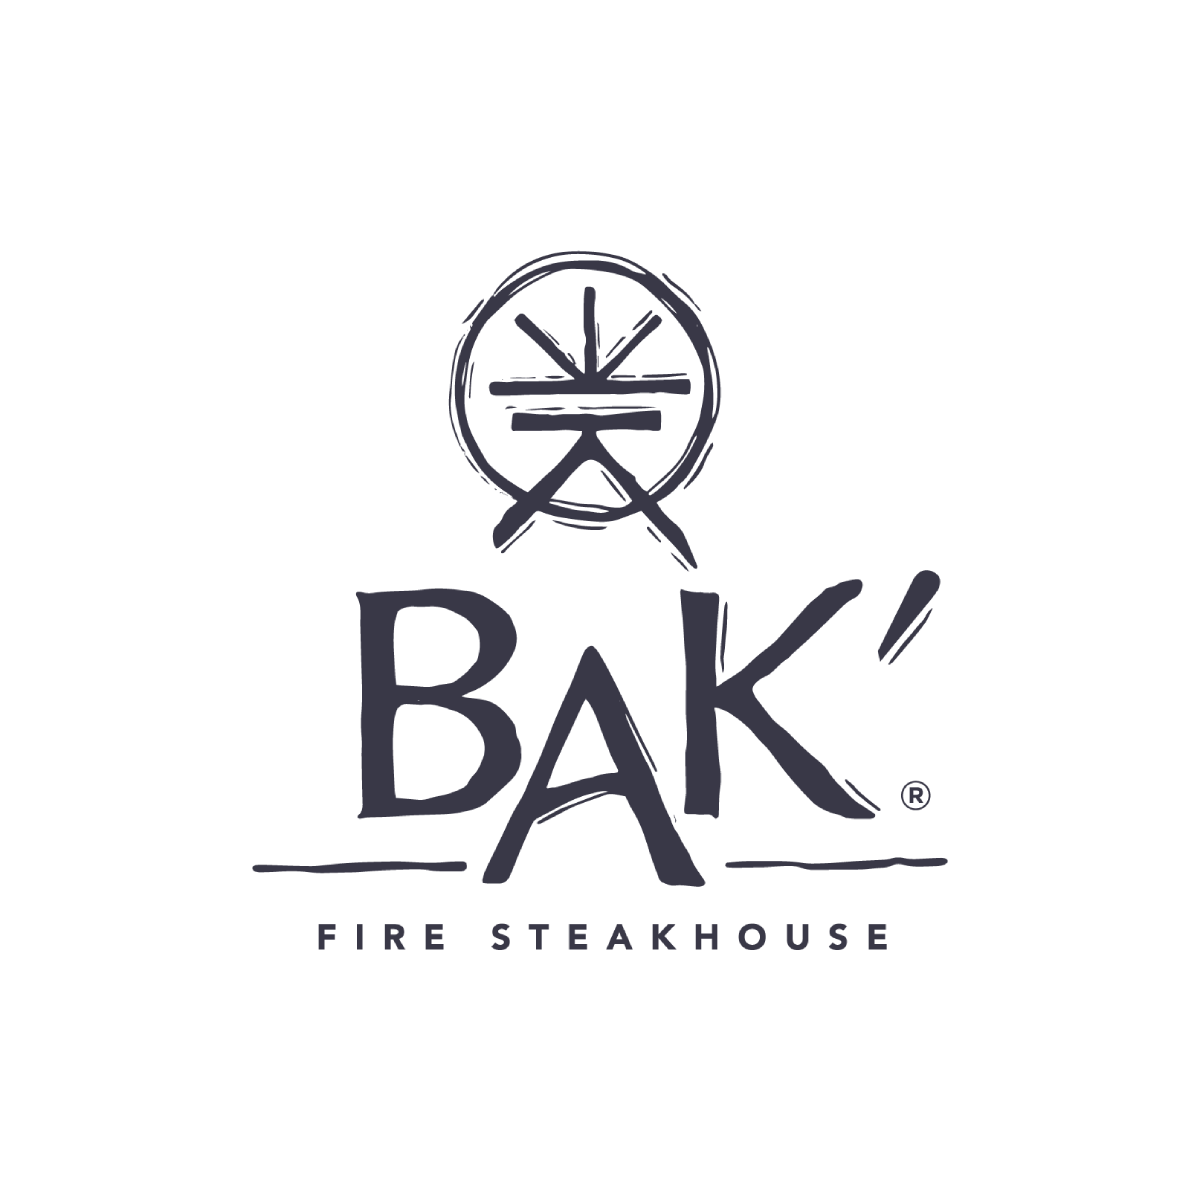 BAK restaurant